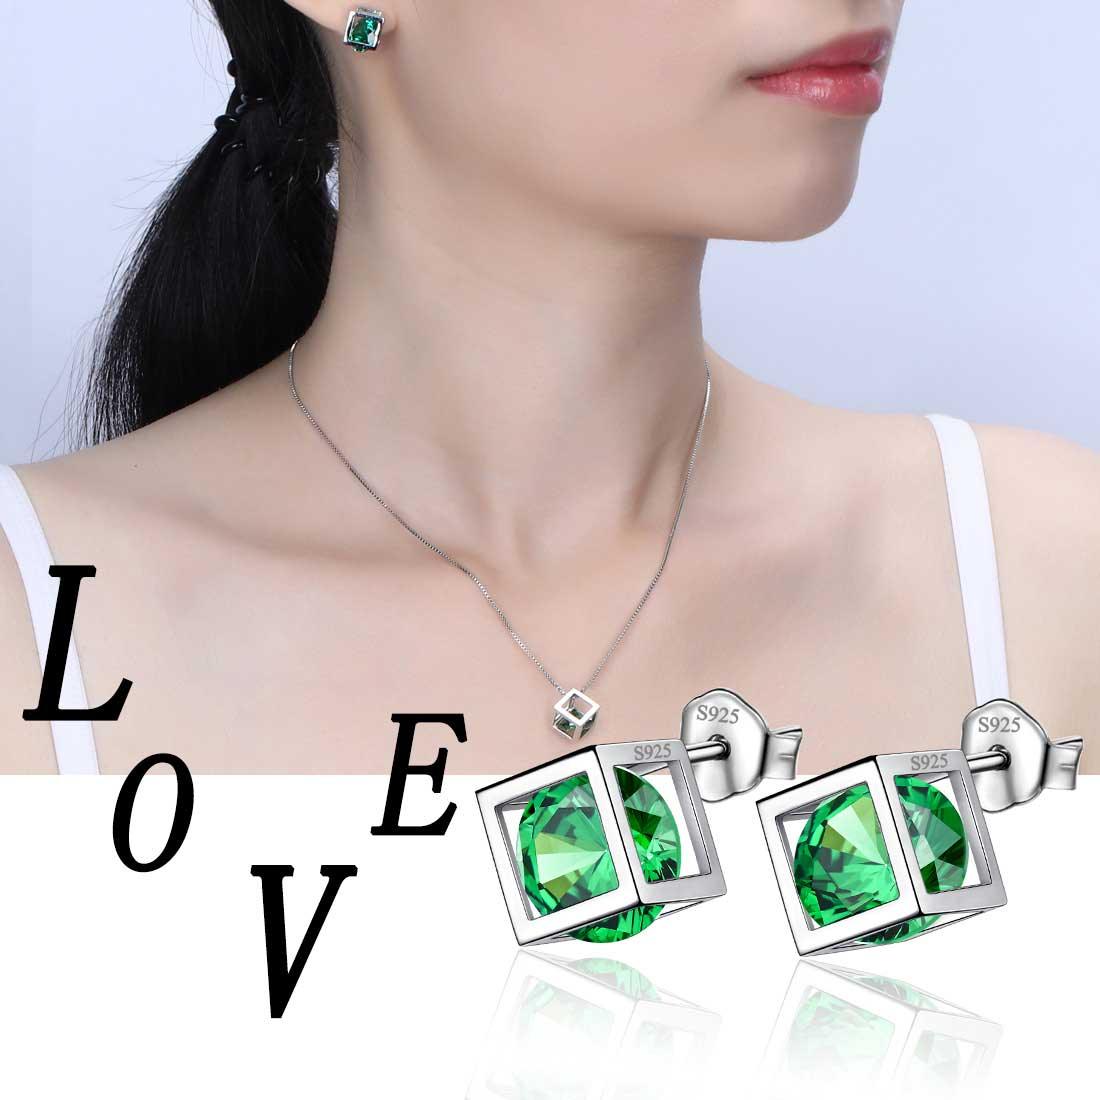 3D Cube Birthstone May Emerald Earrings Sterling Silver - Earrings - Aurora Tears